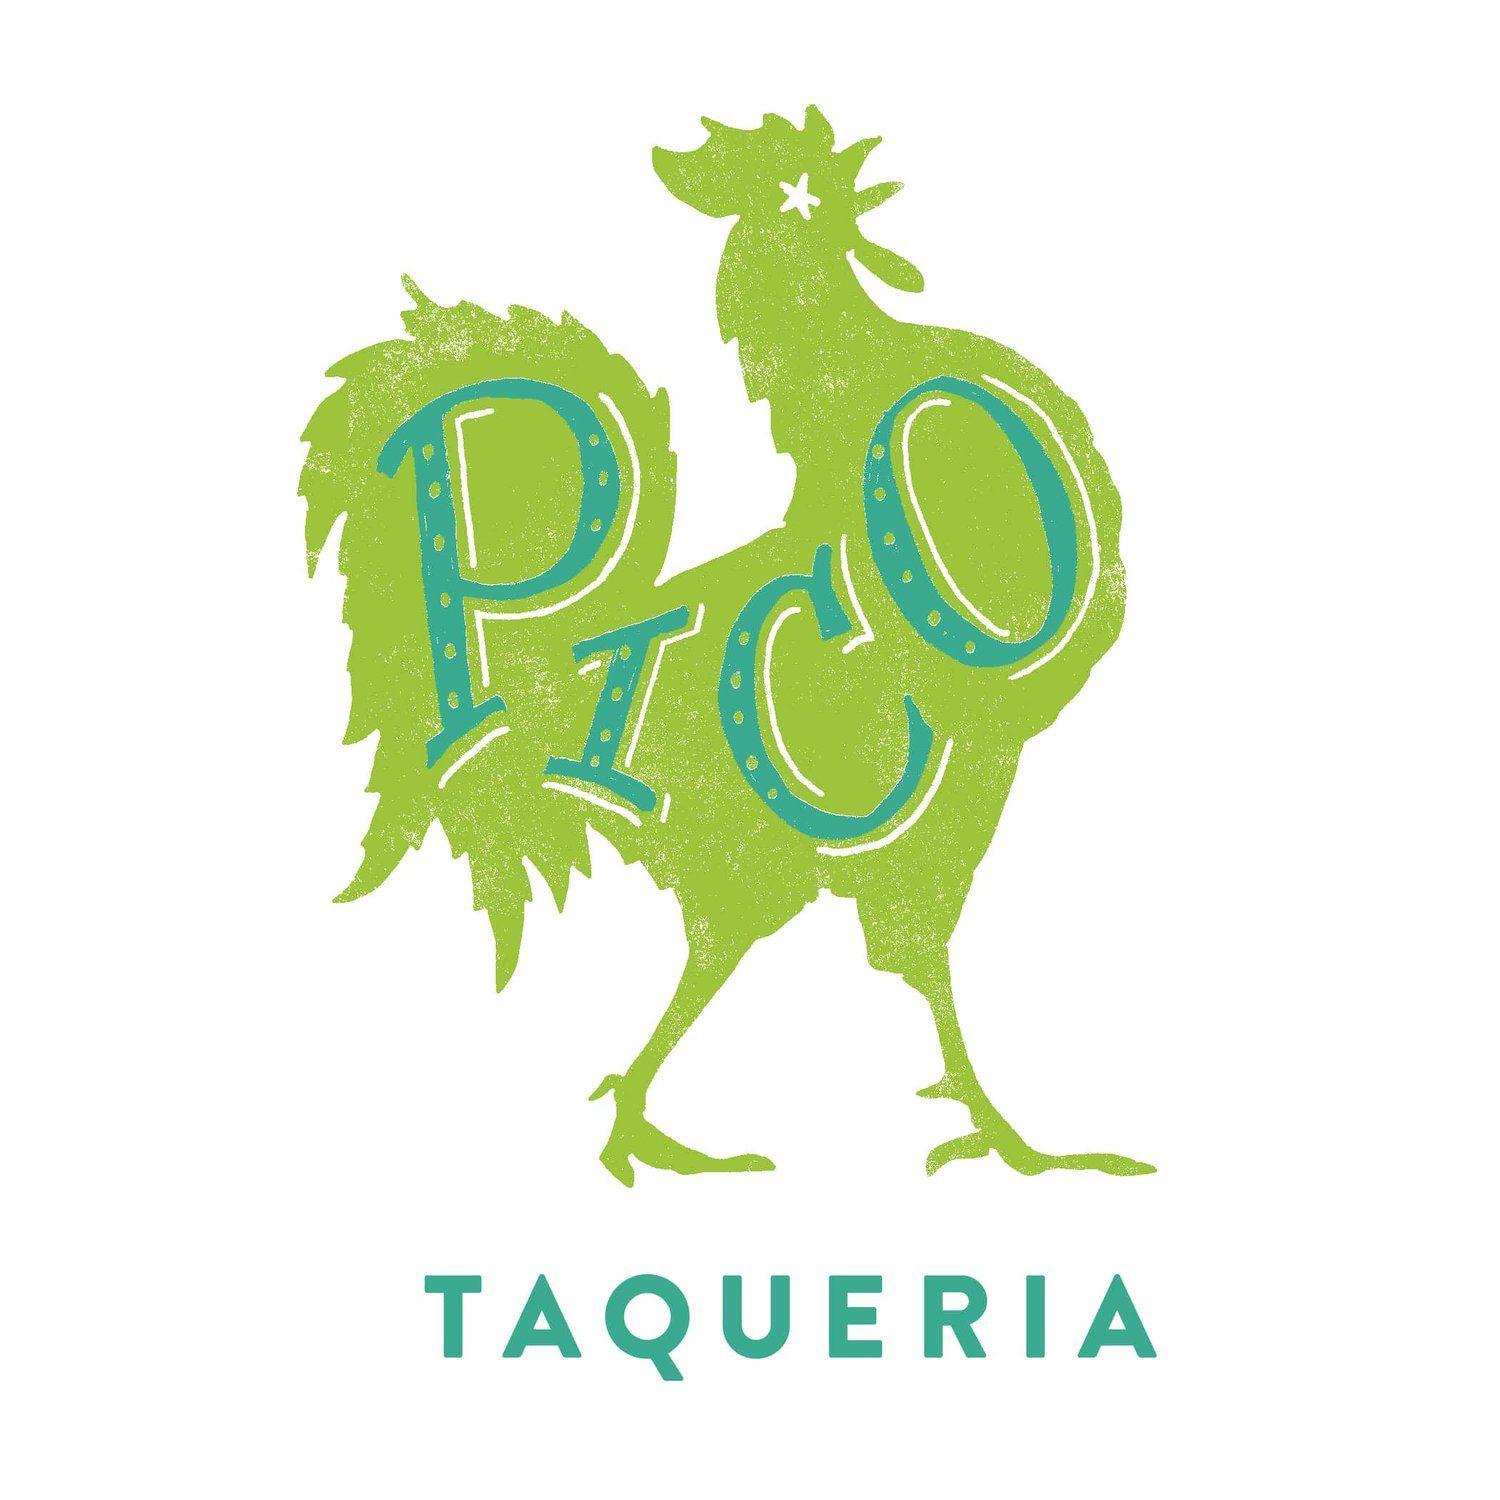 Pico Logo - Pico Taqueria - Gourmet Tacos on Chincoteague Island